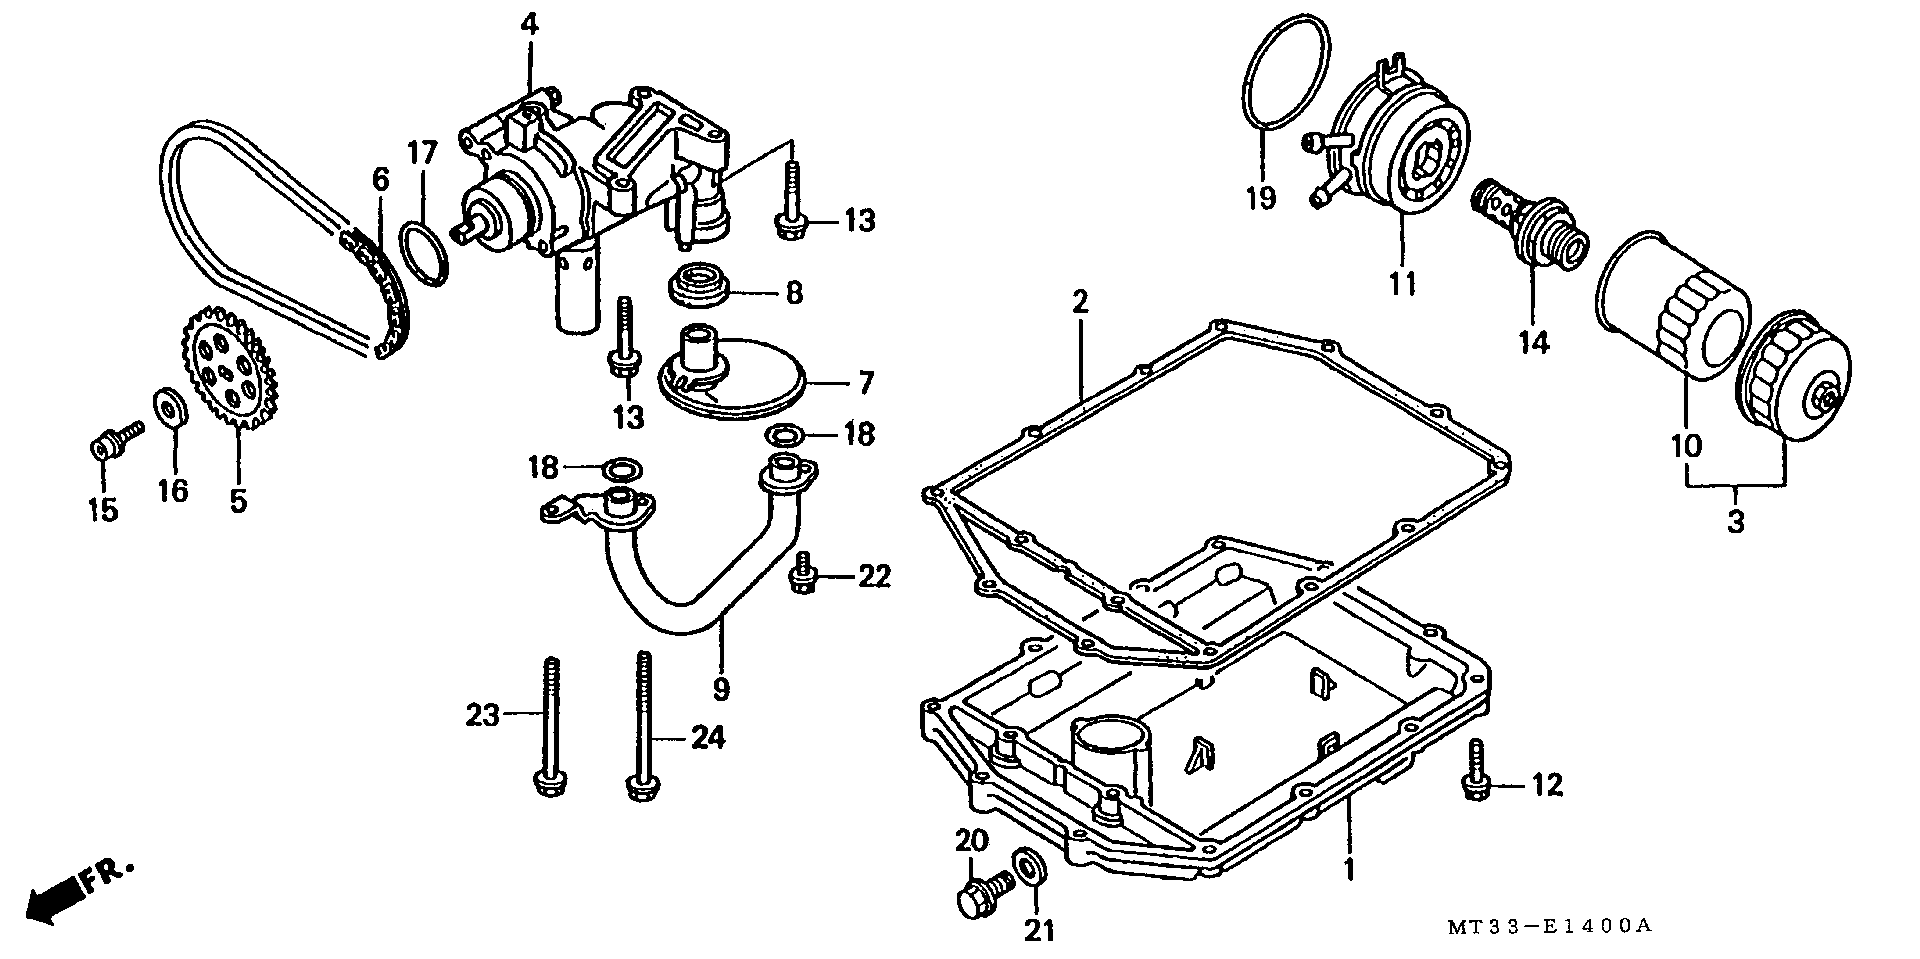 Parts fiche Oil Pump ST1100